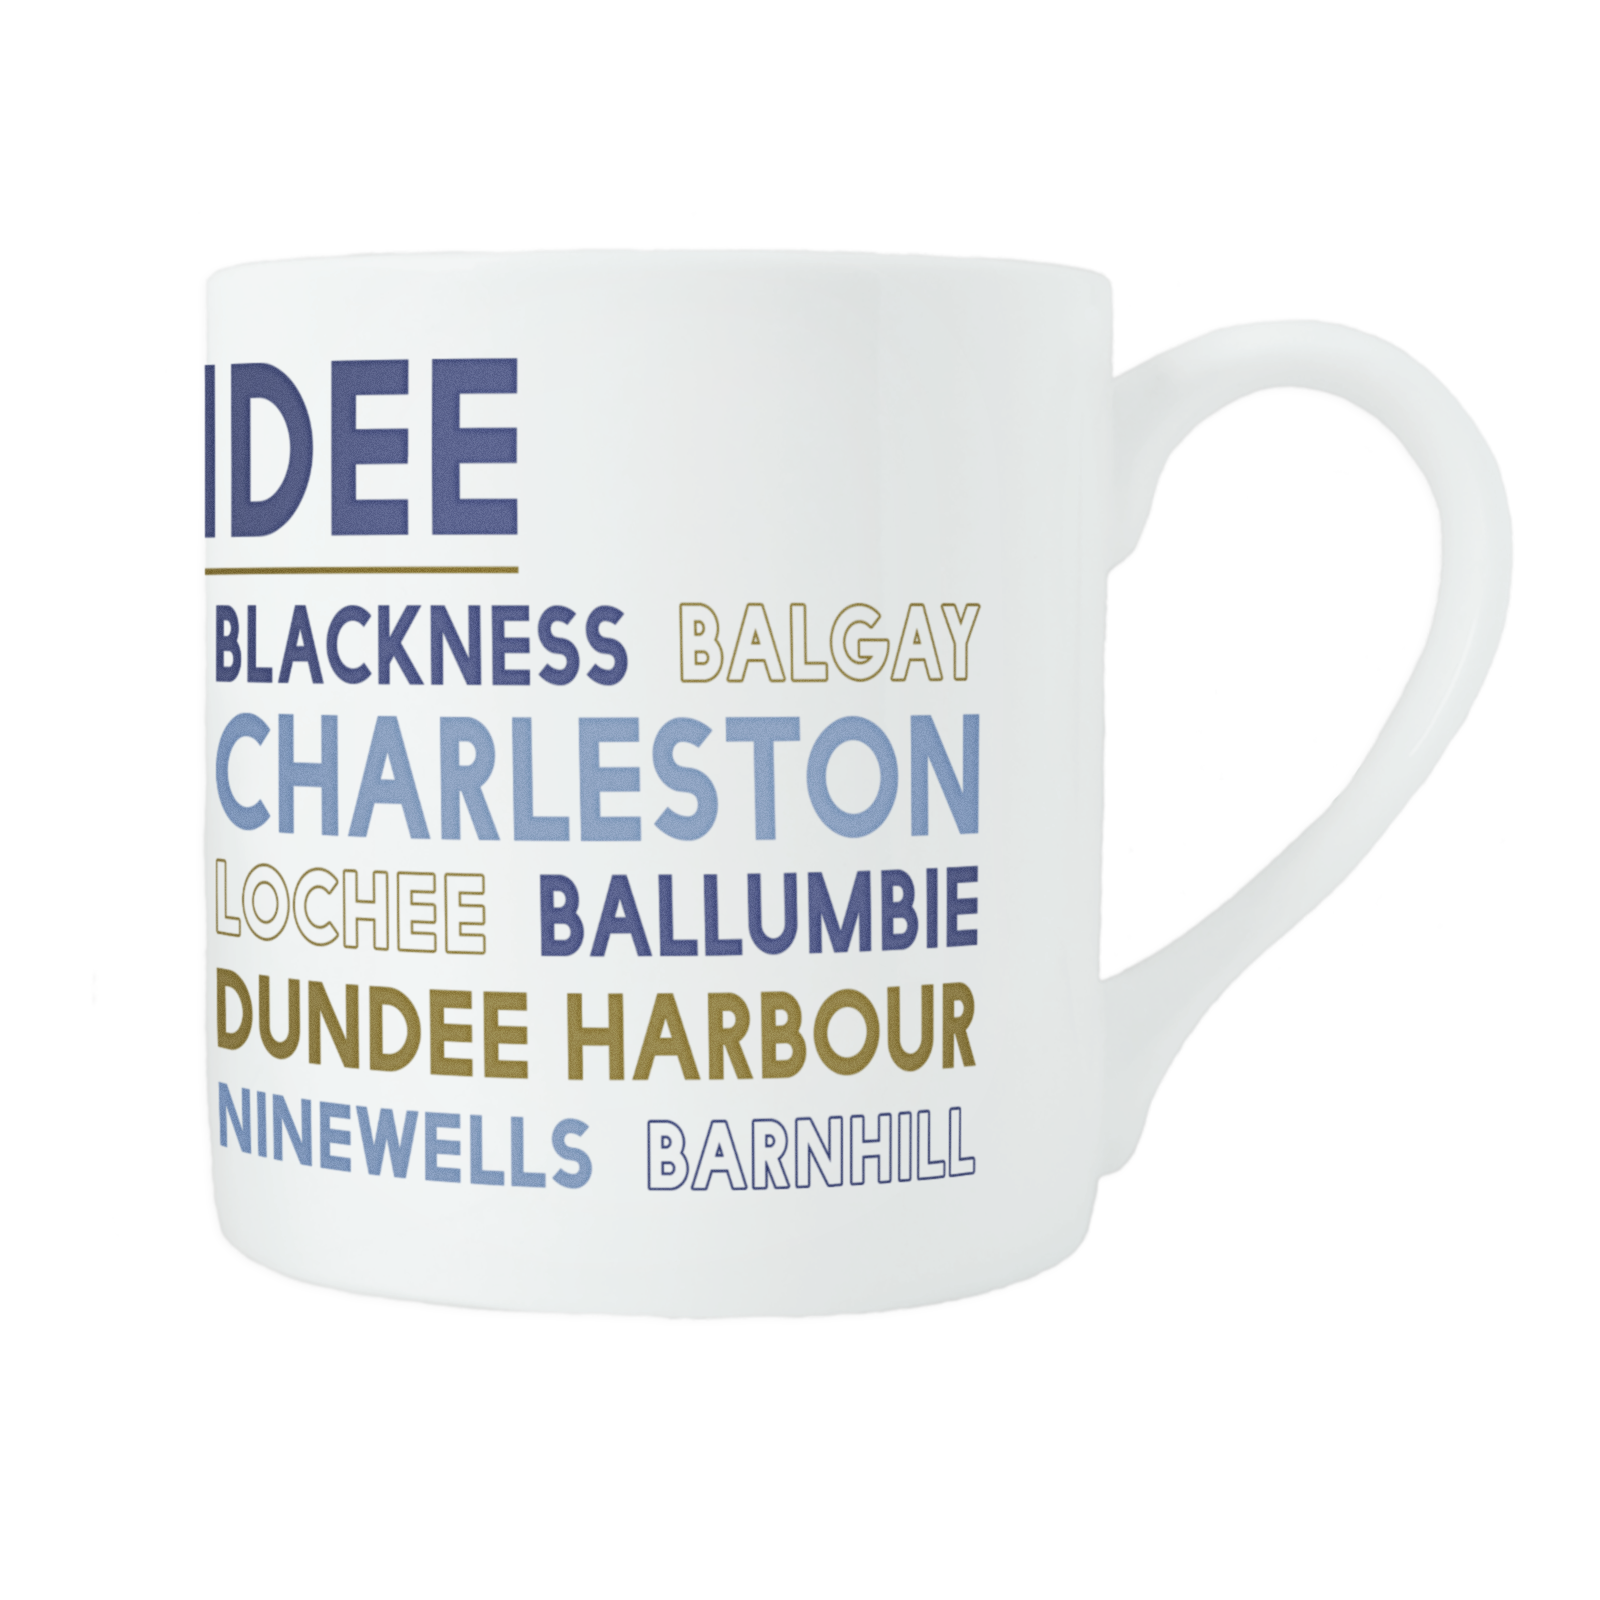 Dundee bone china mug